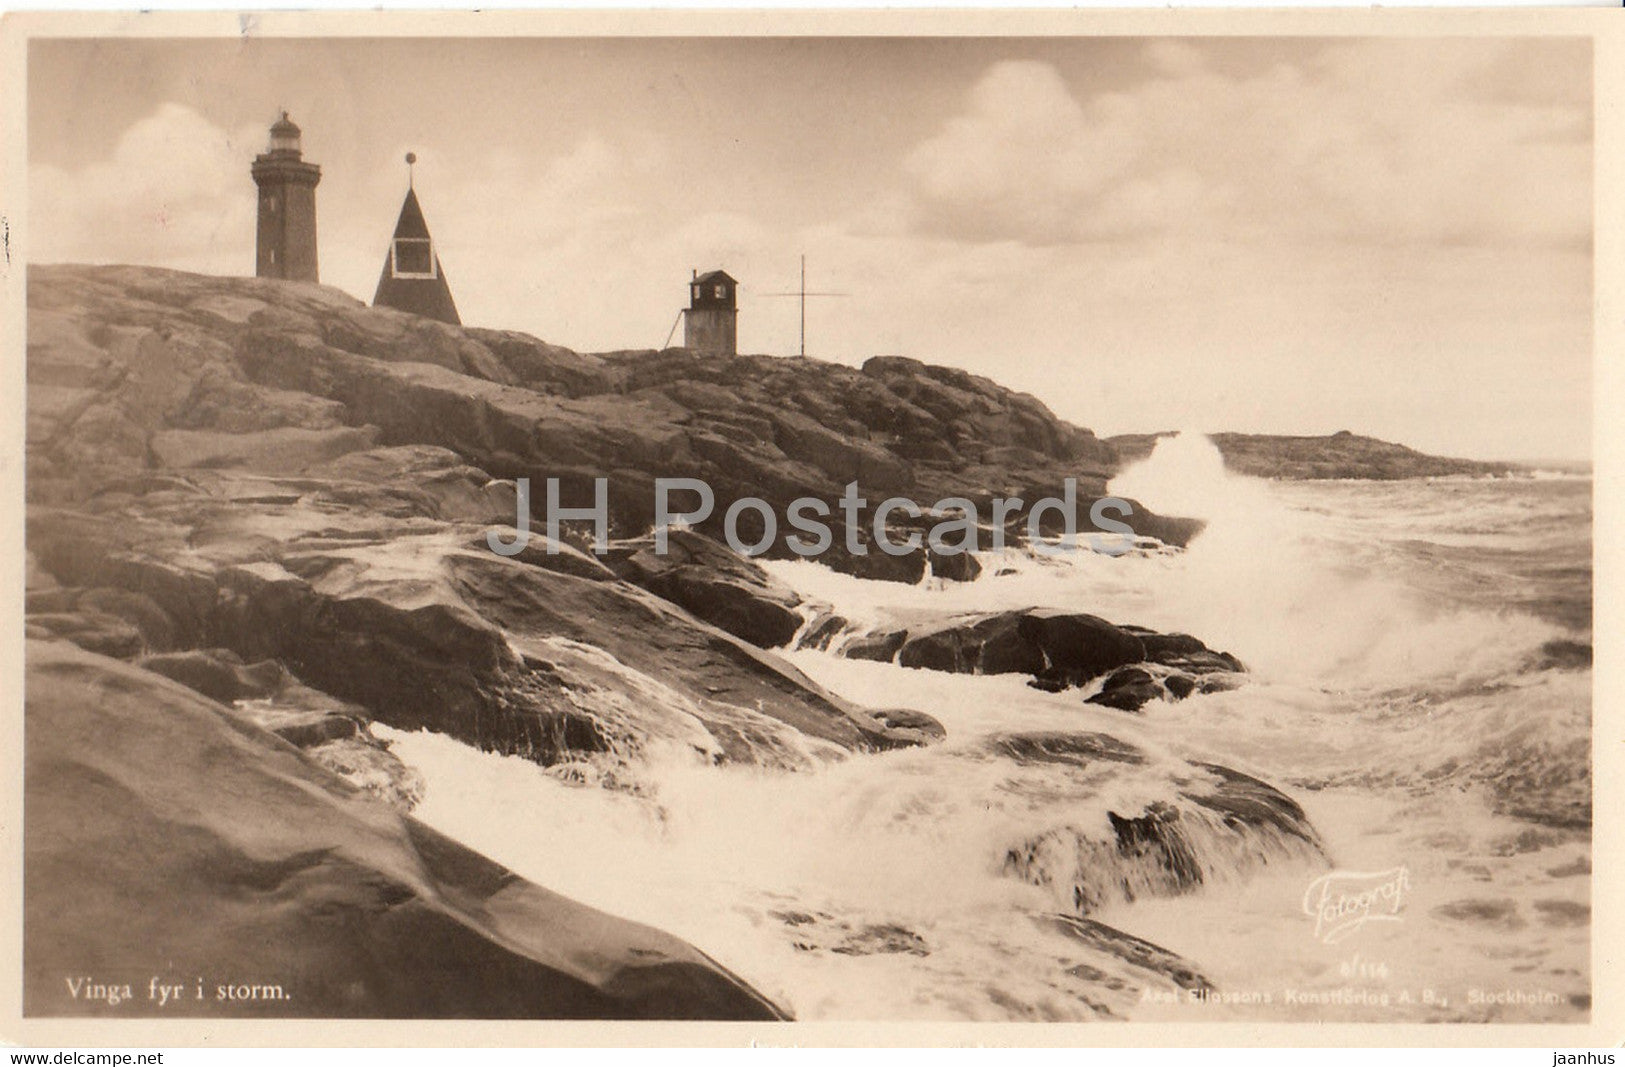 Vinga fyr i storm - lighthouse - old postcard - 1937 - Sweden - used - JH Postcards